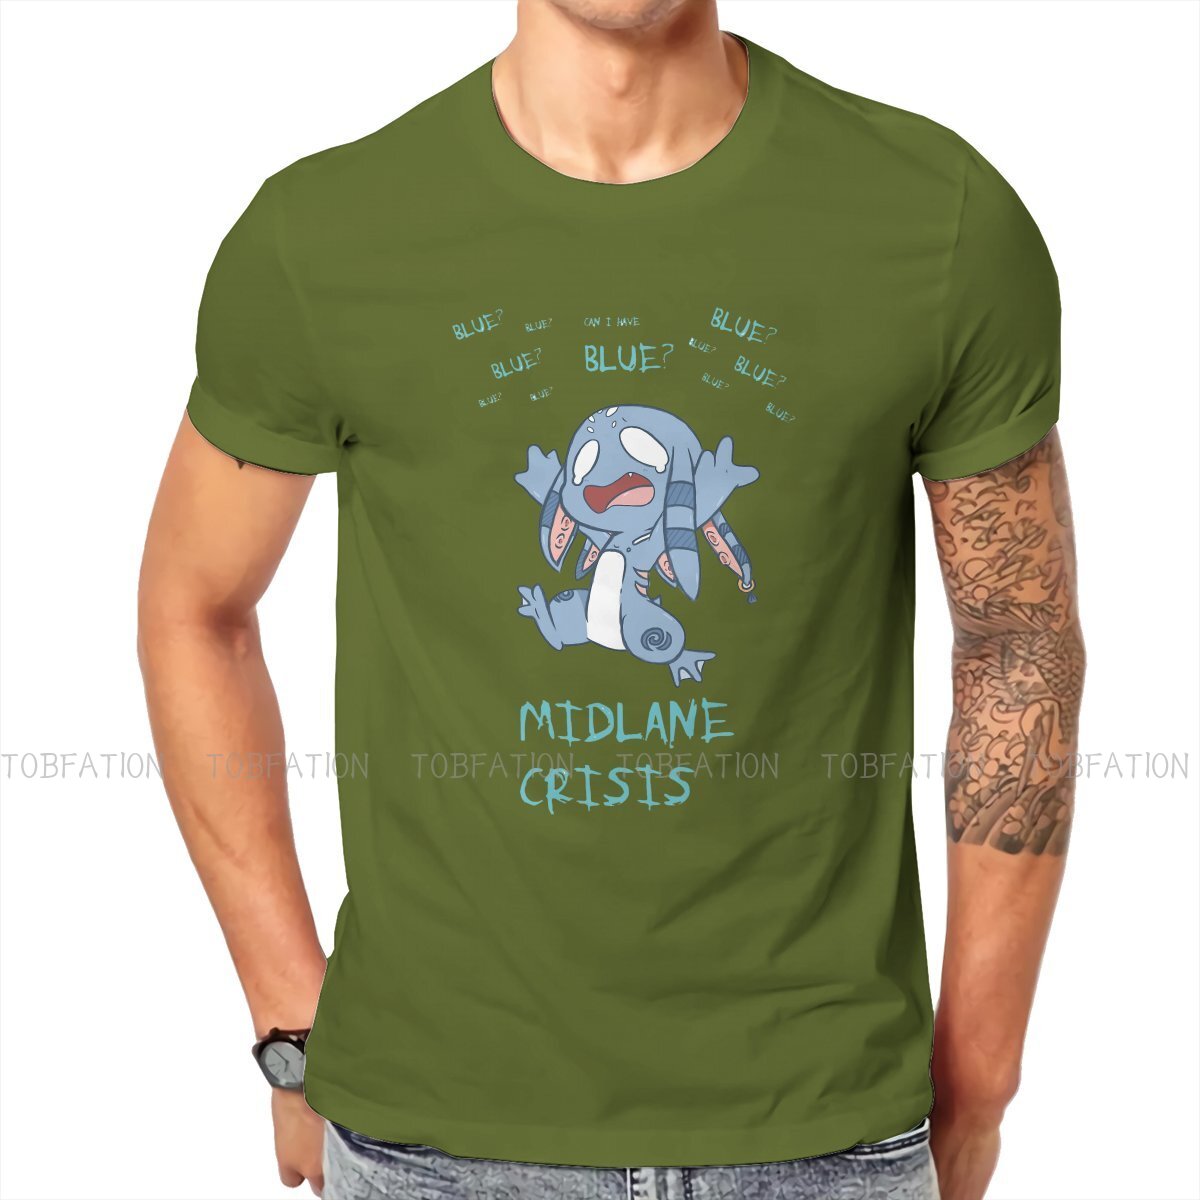 Midlane Crisis Fizz T Shirt - League of Legends Fan Store